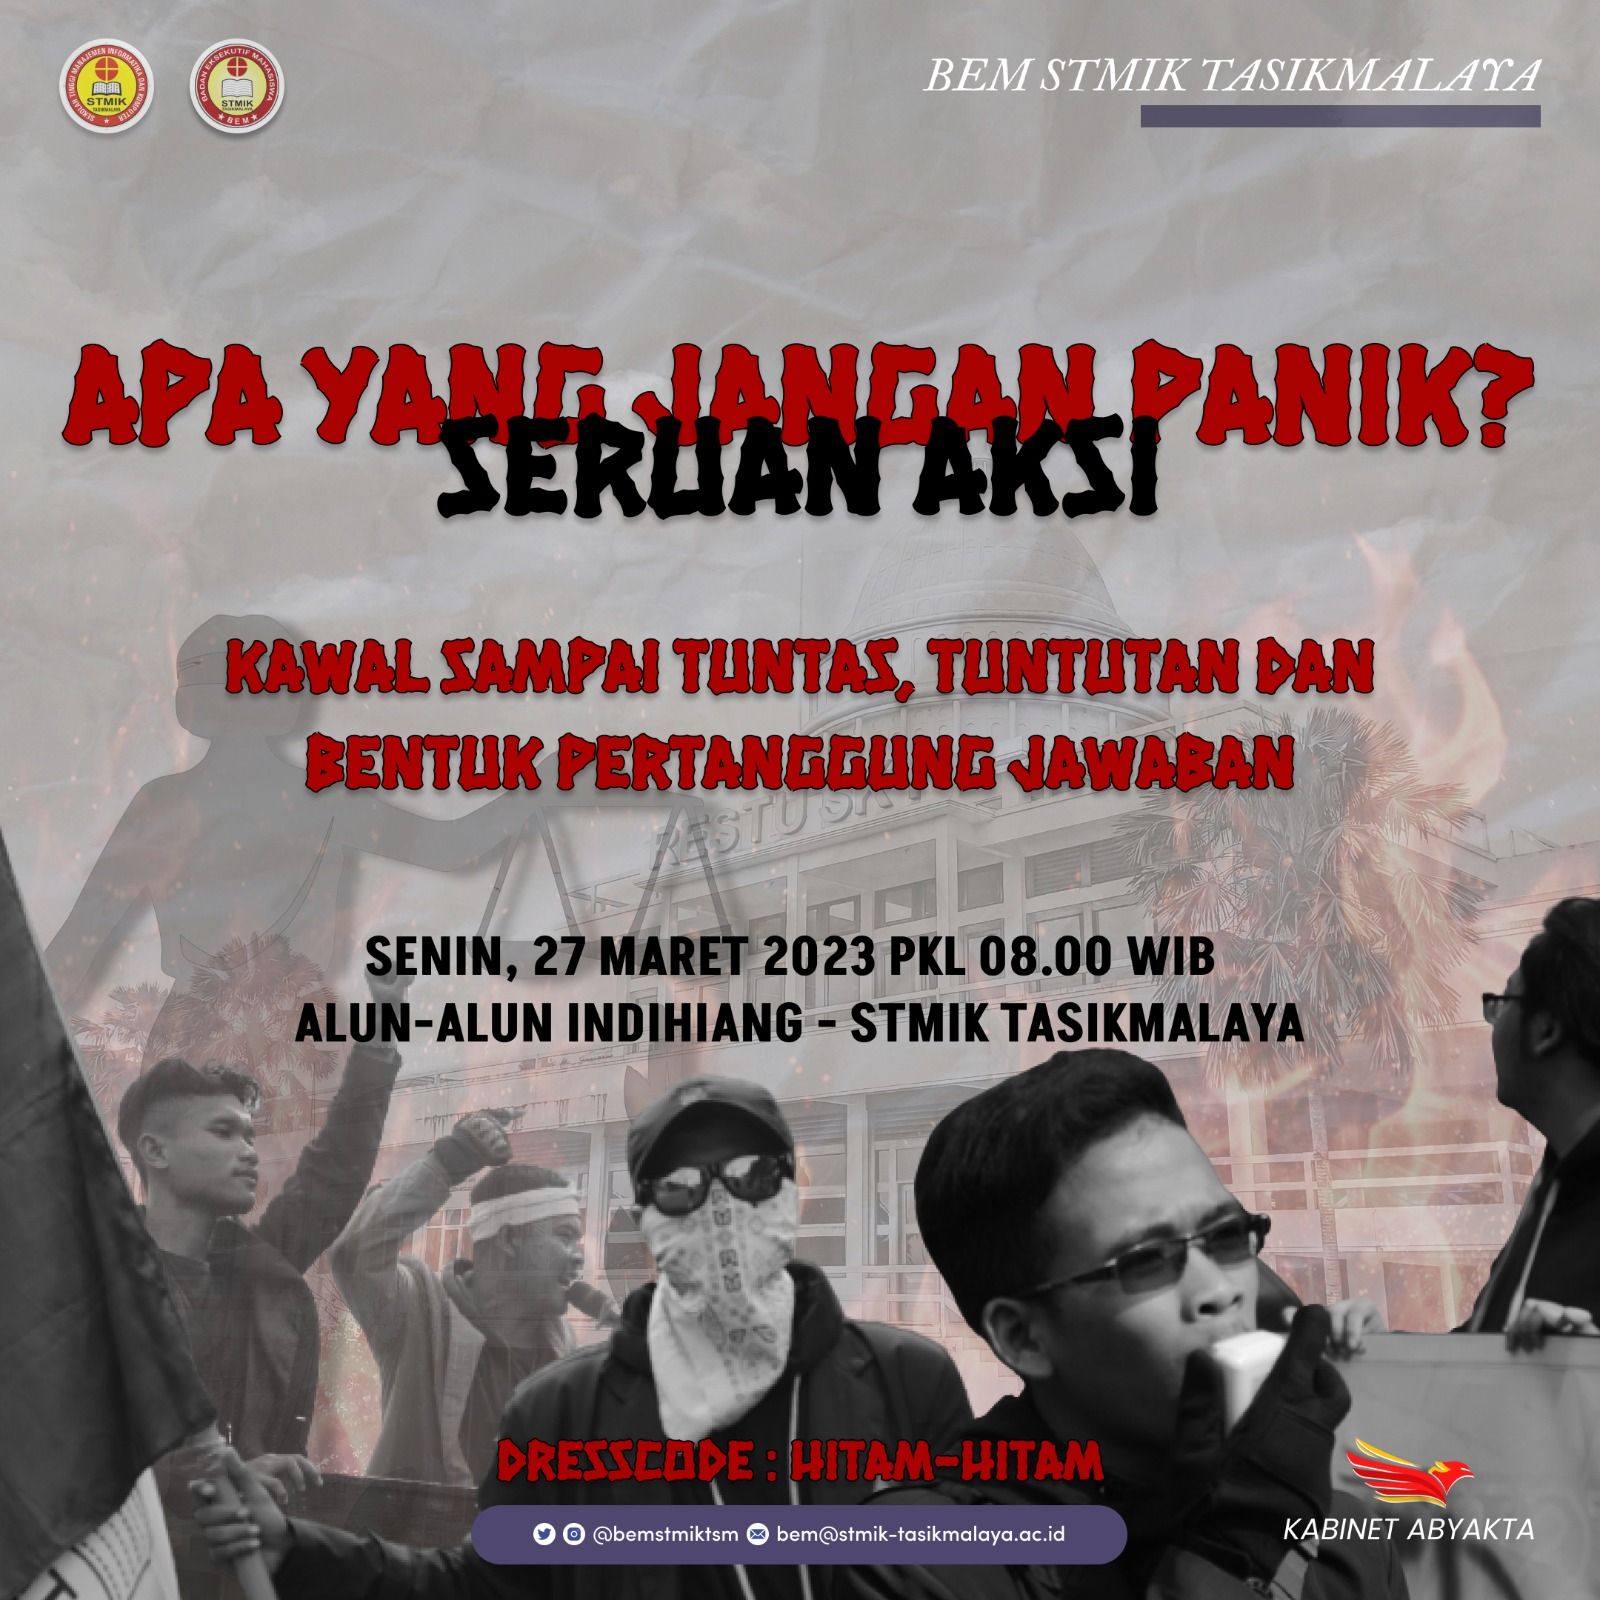 Poster ajakan untuk menggelar aksi dari BEM STMIK Tasikmalaya.